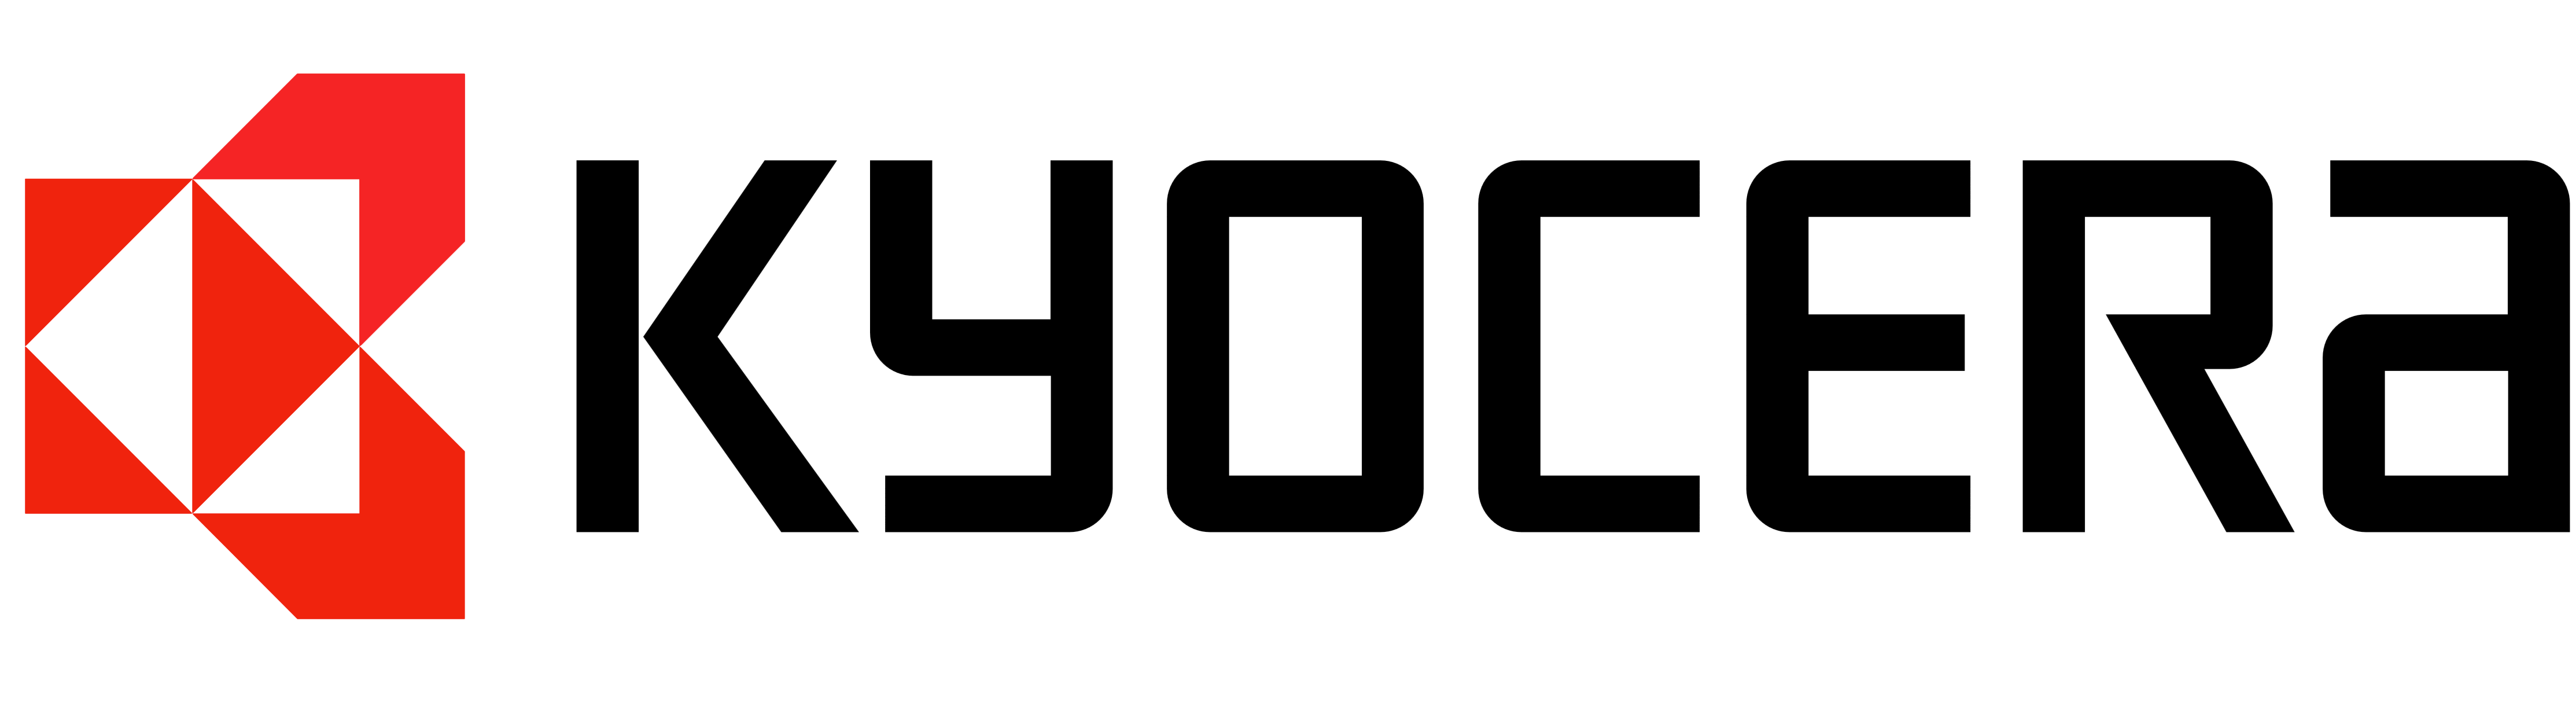 Kyocera Vector Logo PNG